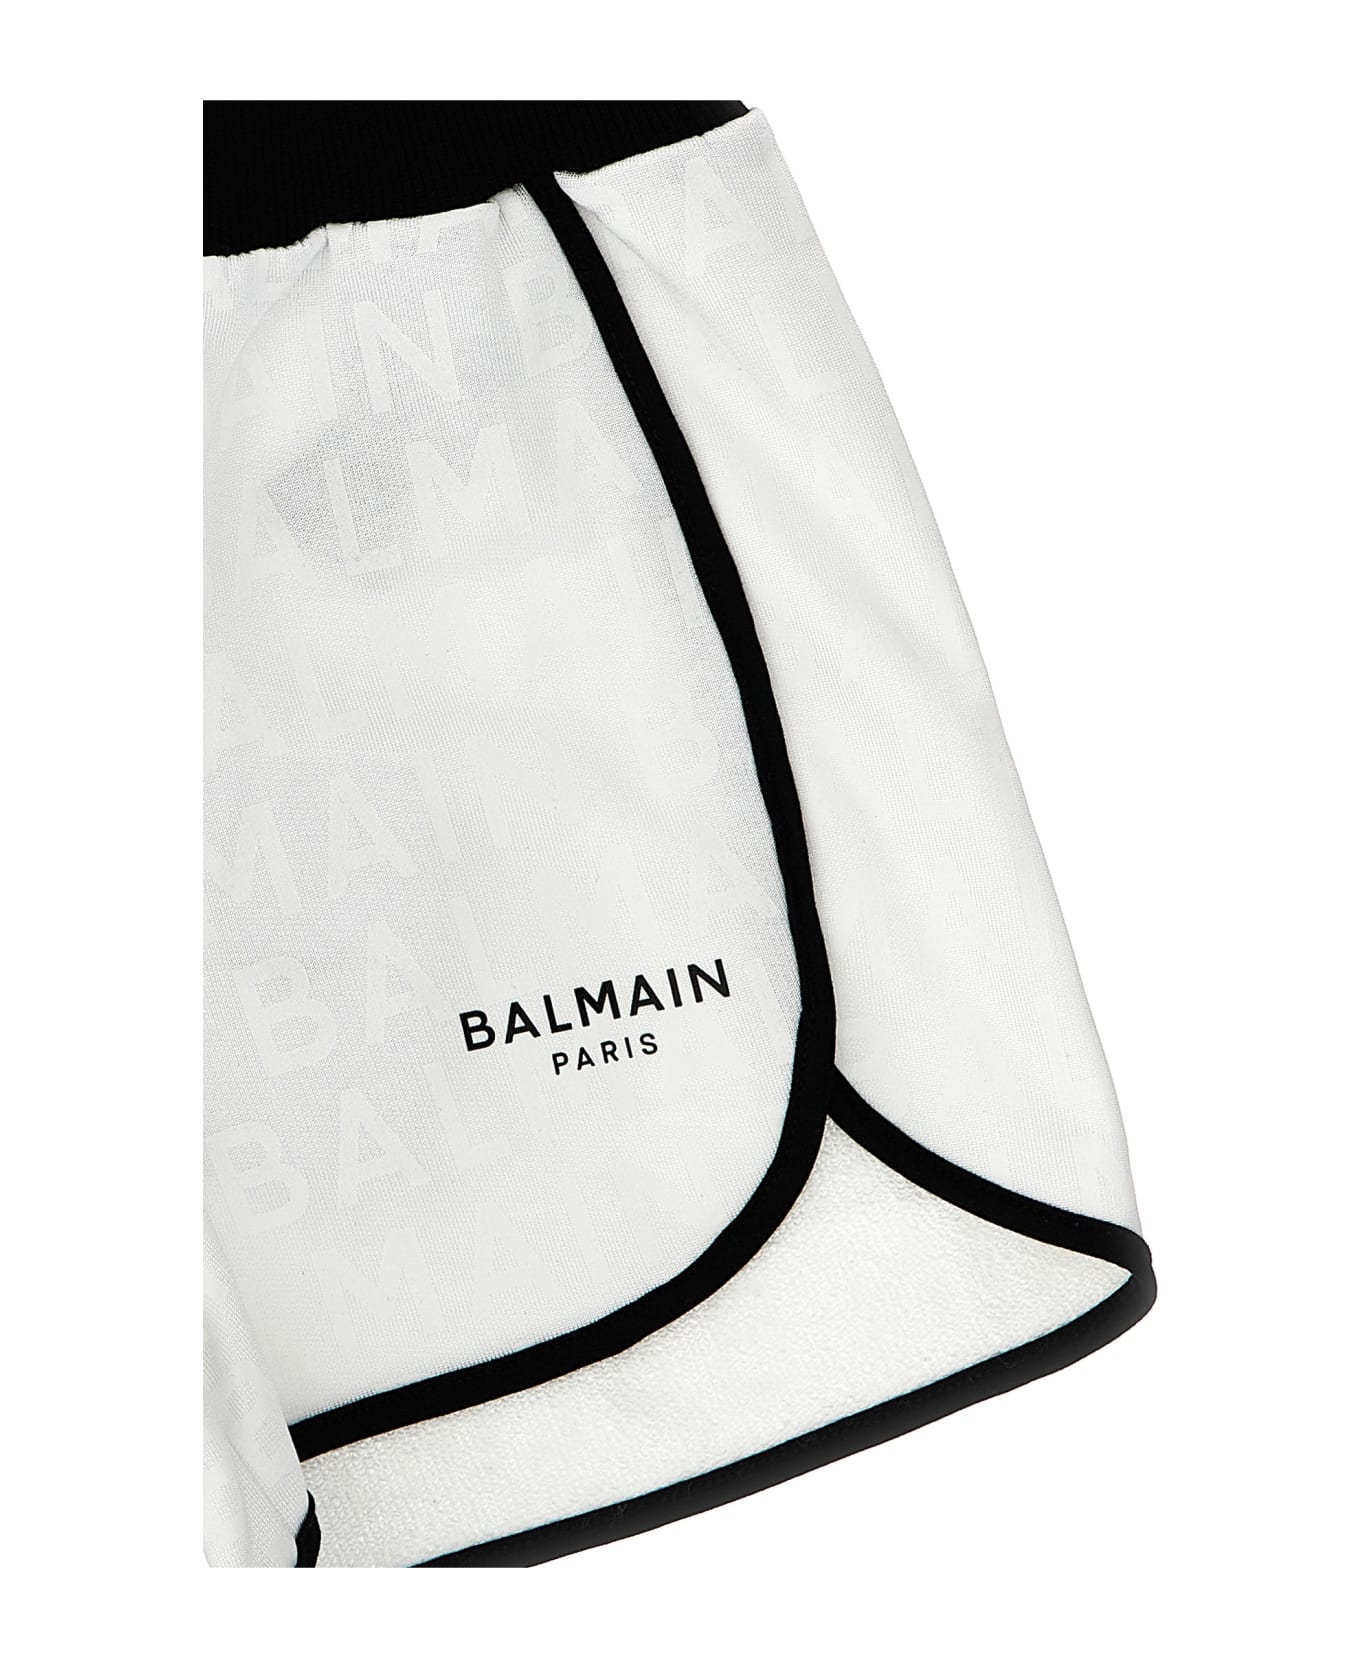 Balmain Logo Shorts - White ボトムス